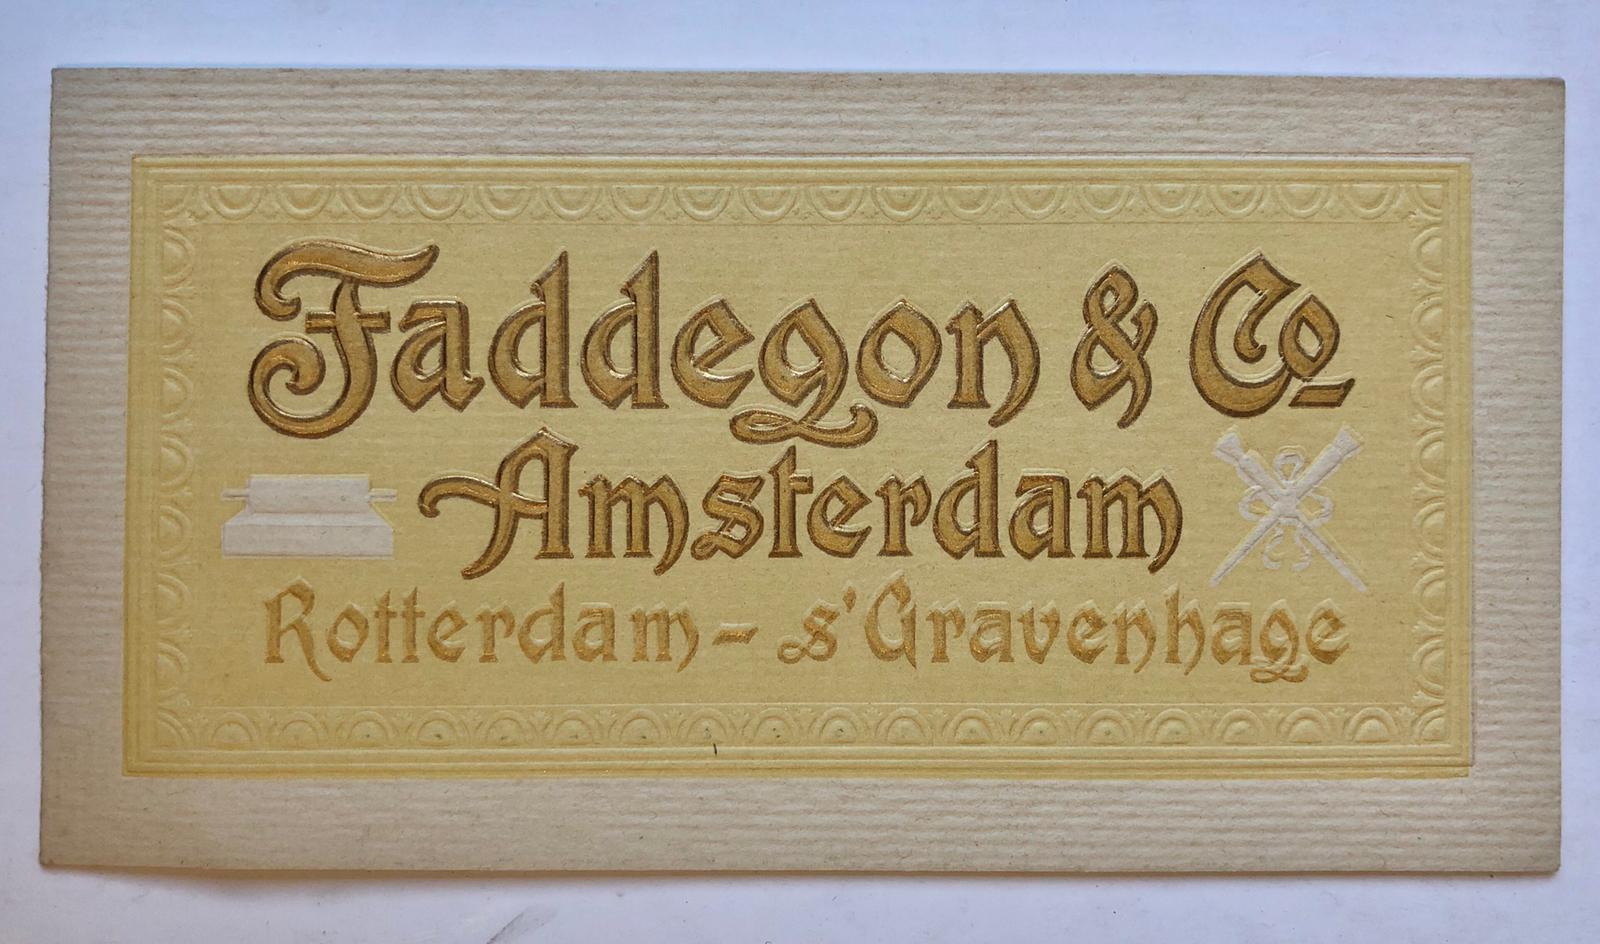  - [ADDRESS CARD, FADDEGON] Adreskaart (4 p.) van drukkerij Faddegon & Co. te Amsterdam, Rotterdam, 's-Gravenhage; eerste helft 20ste eeuw.